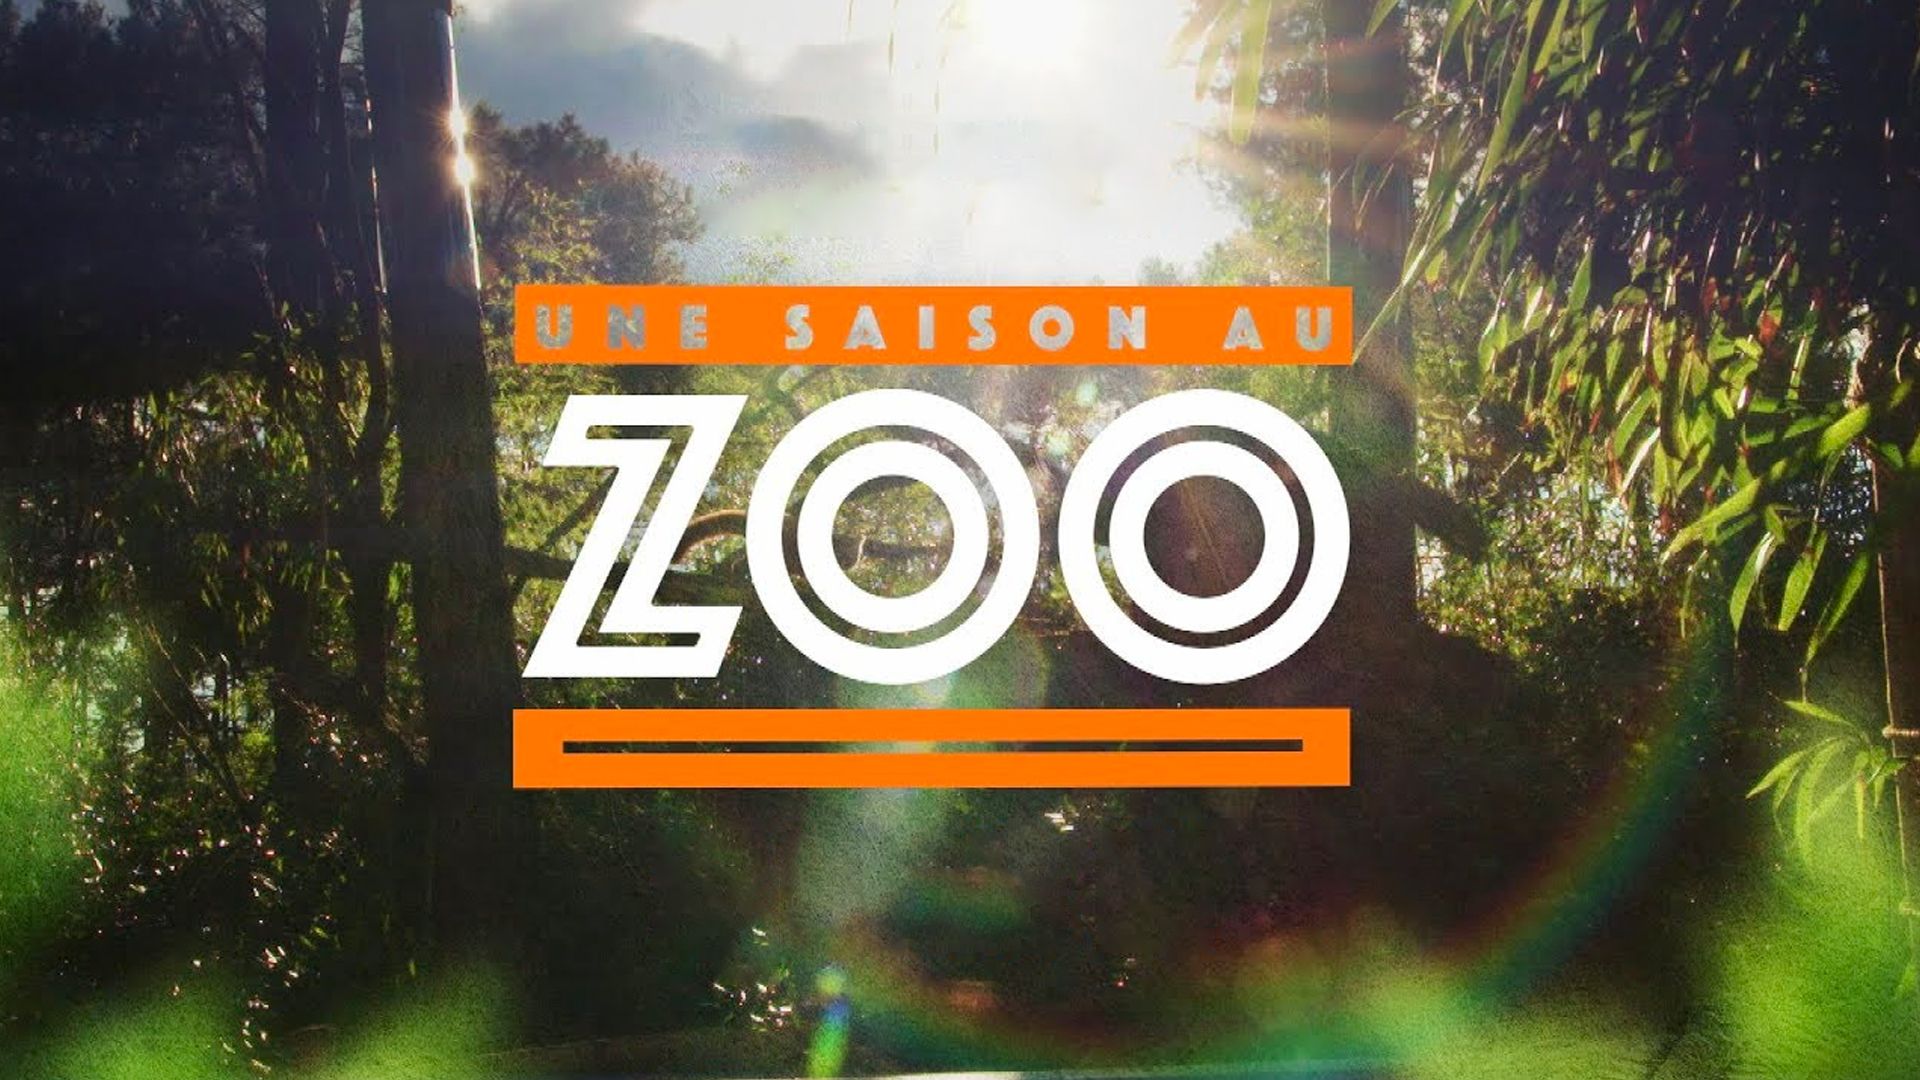 Une saison au zoo S10